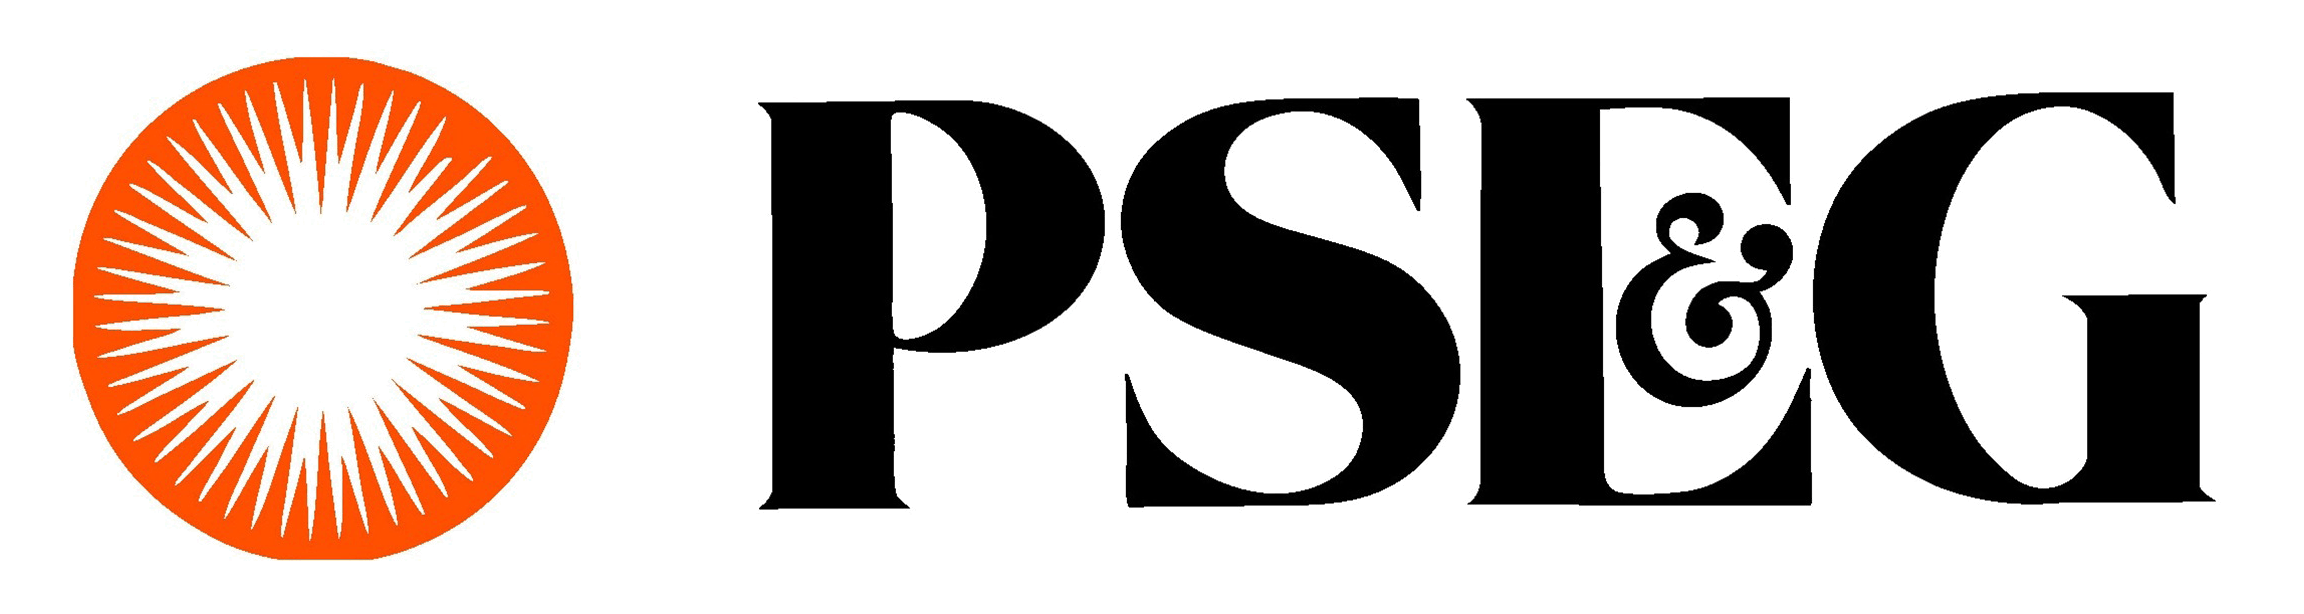 PSEG Logo - PSEG Logo PNG Transparent - PngPix